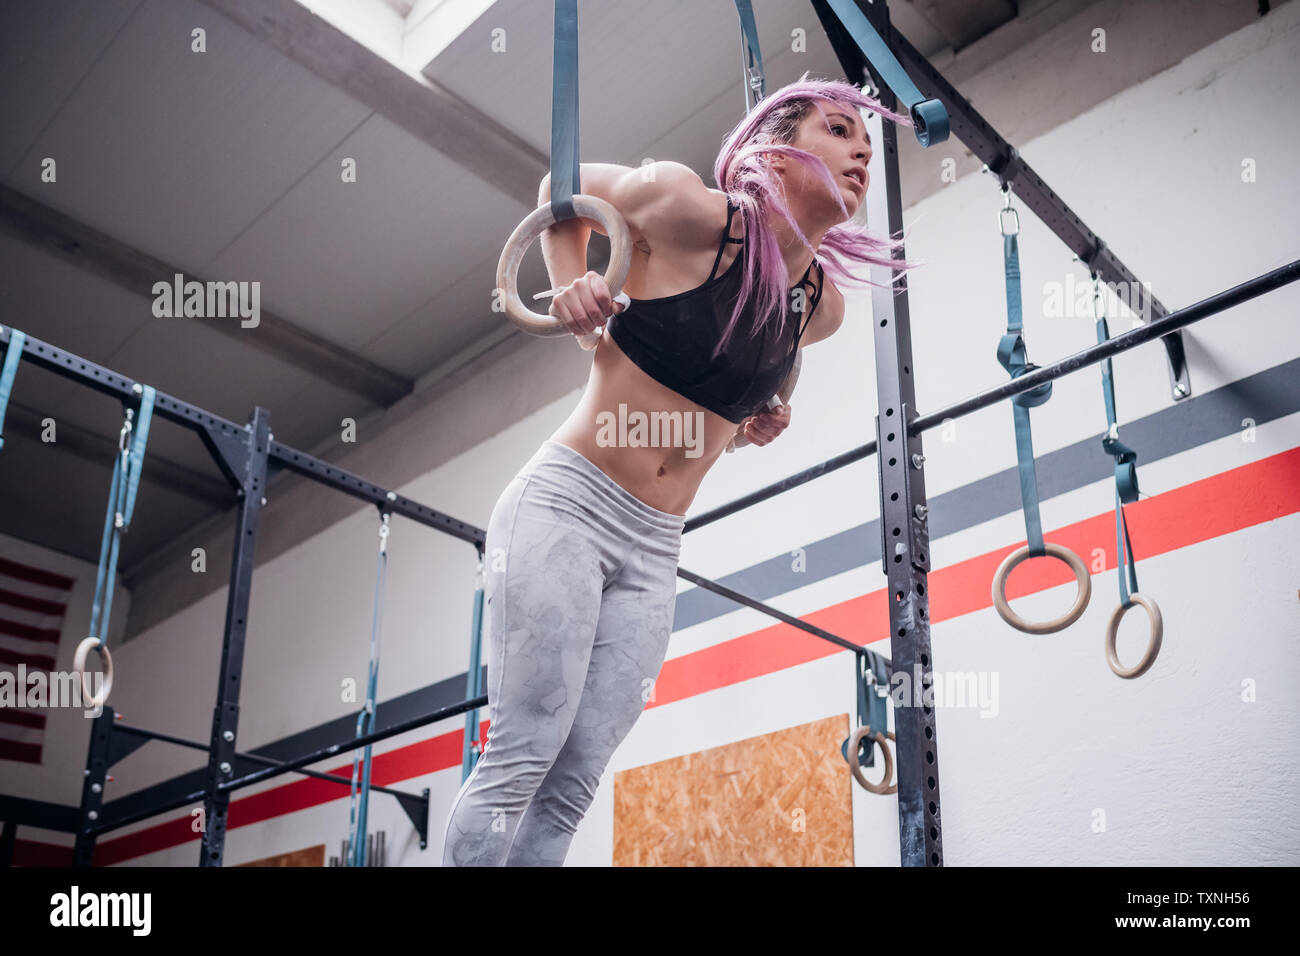 Junge Frau Balancieren auf Gymnastik Ringe in der Turnhalle Stockfoto